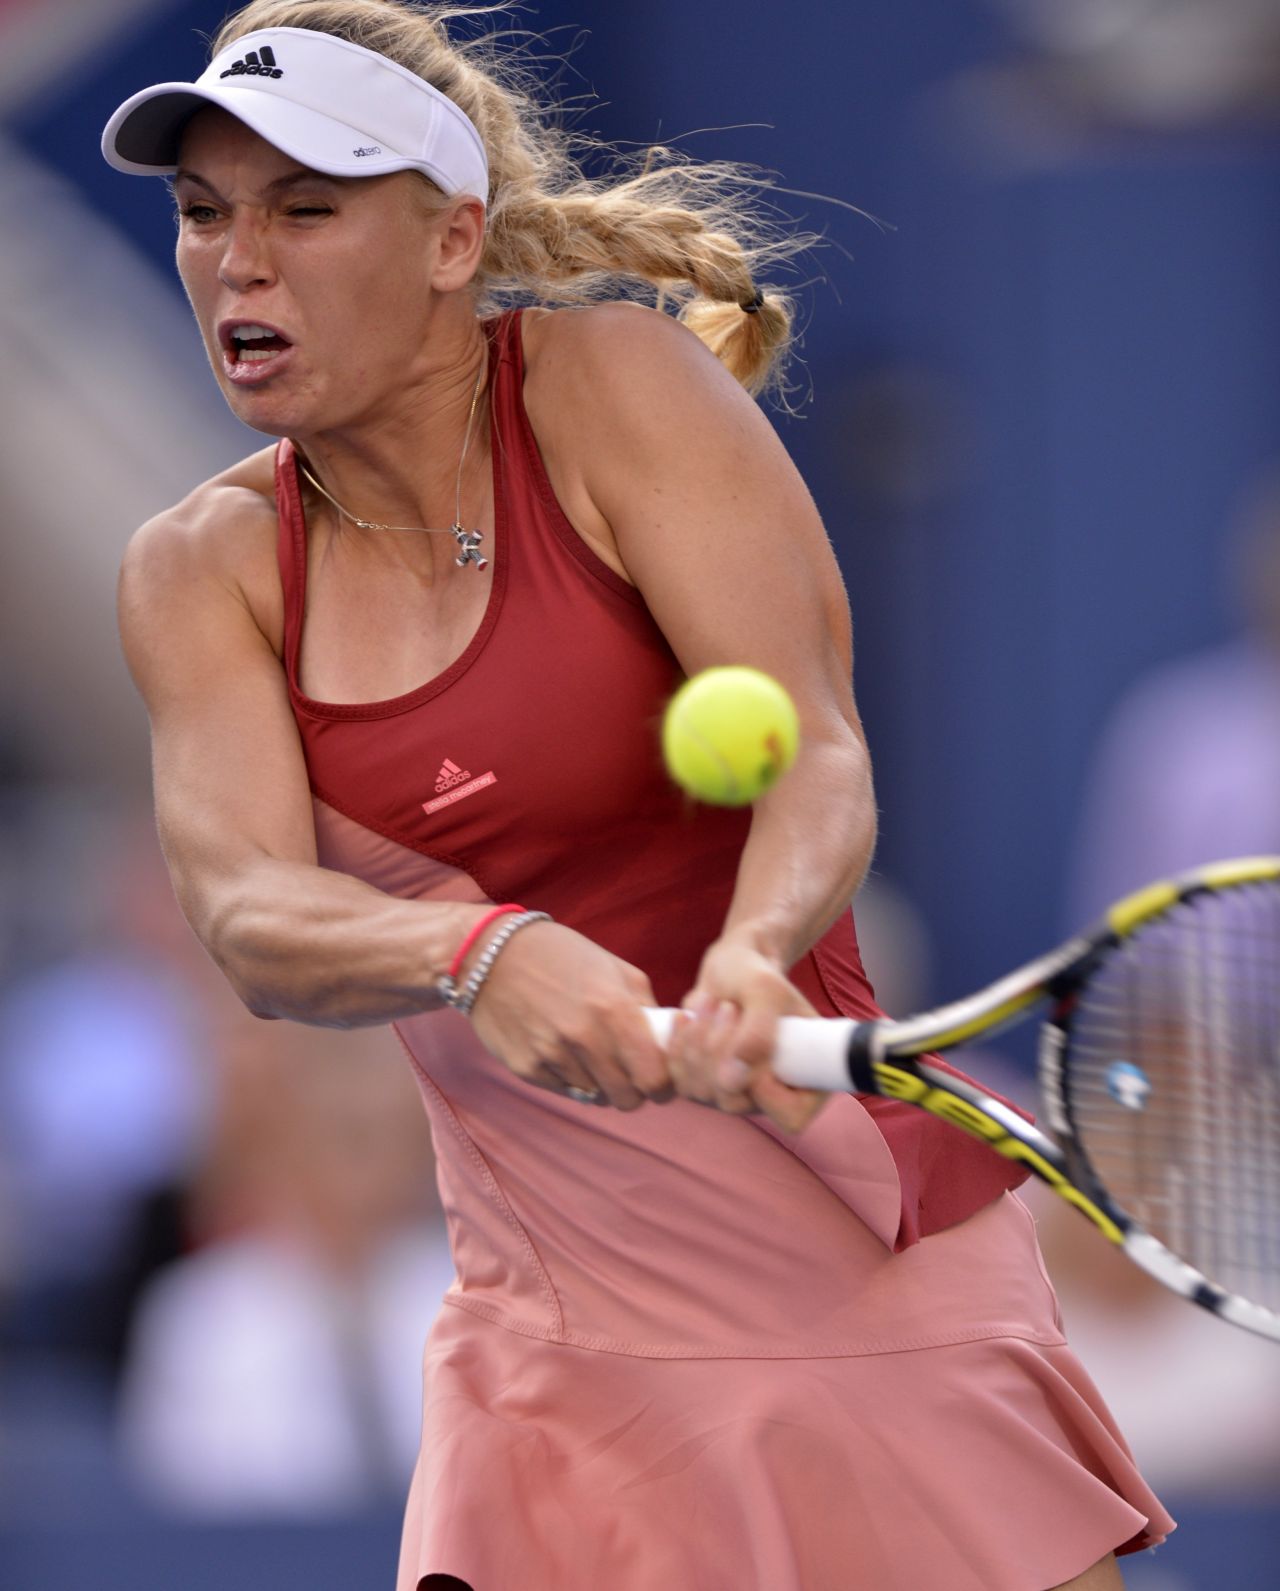 Caroline Wozniacki U.S. Open 2014 Final Match in New York City